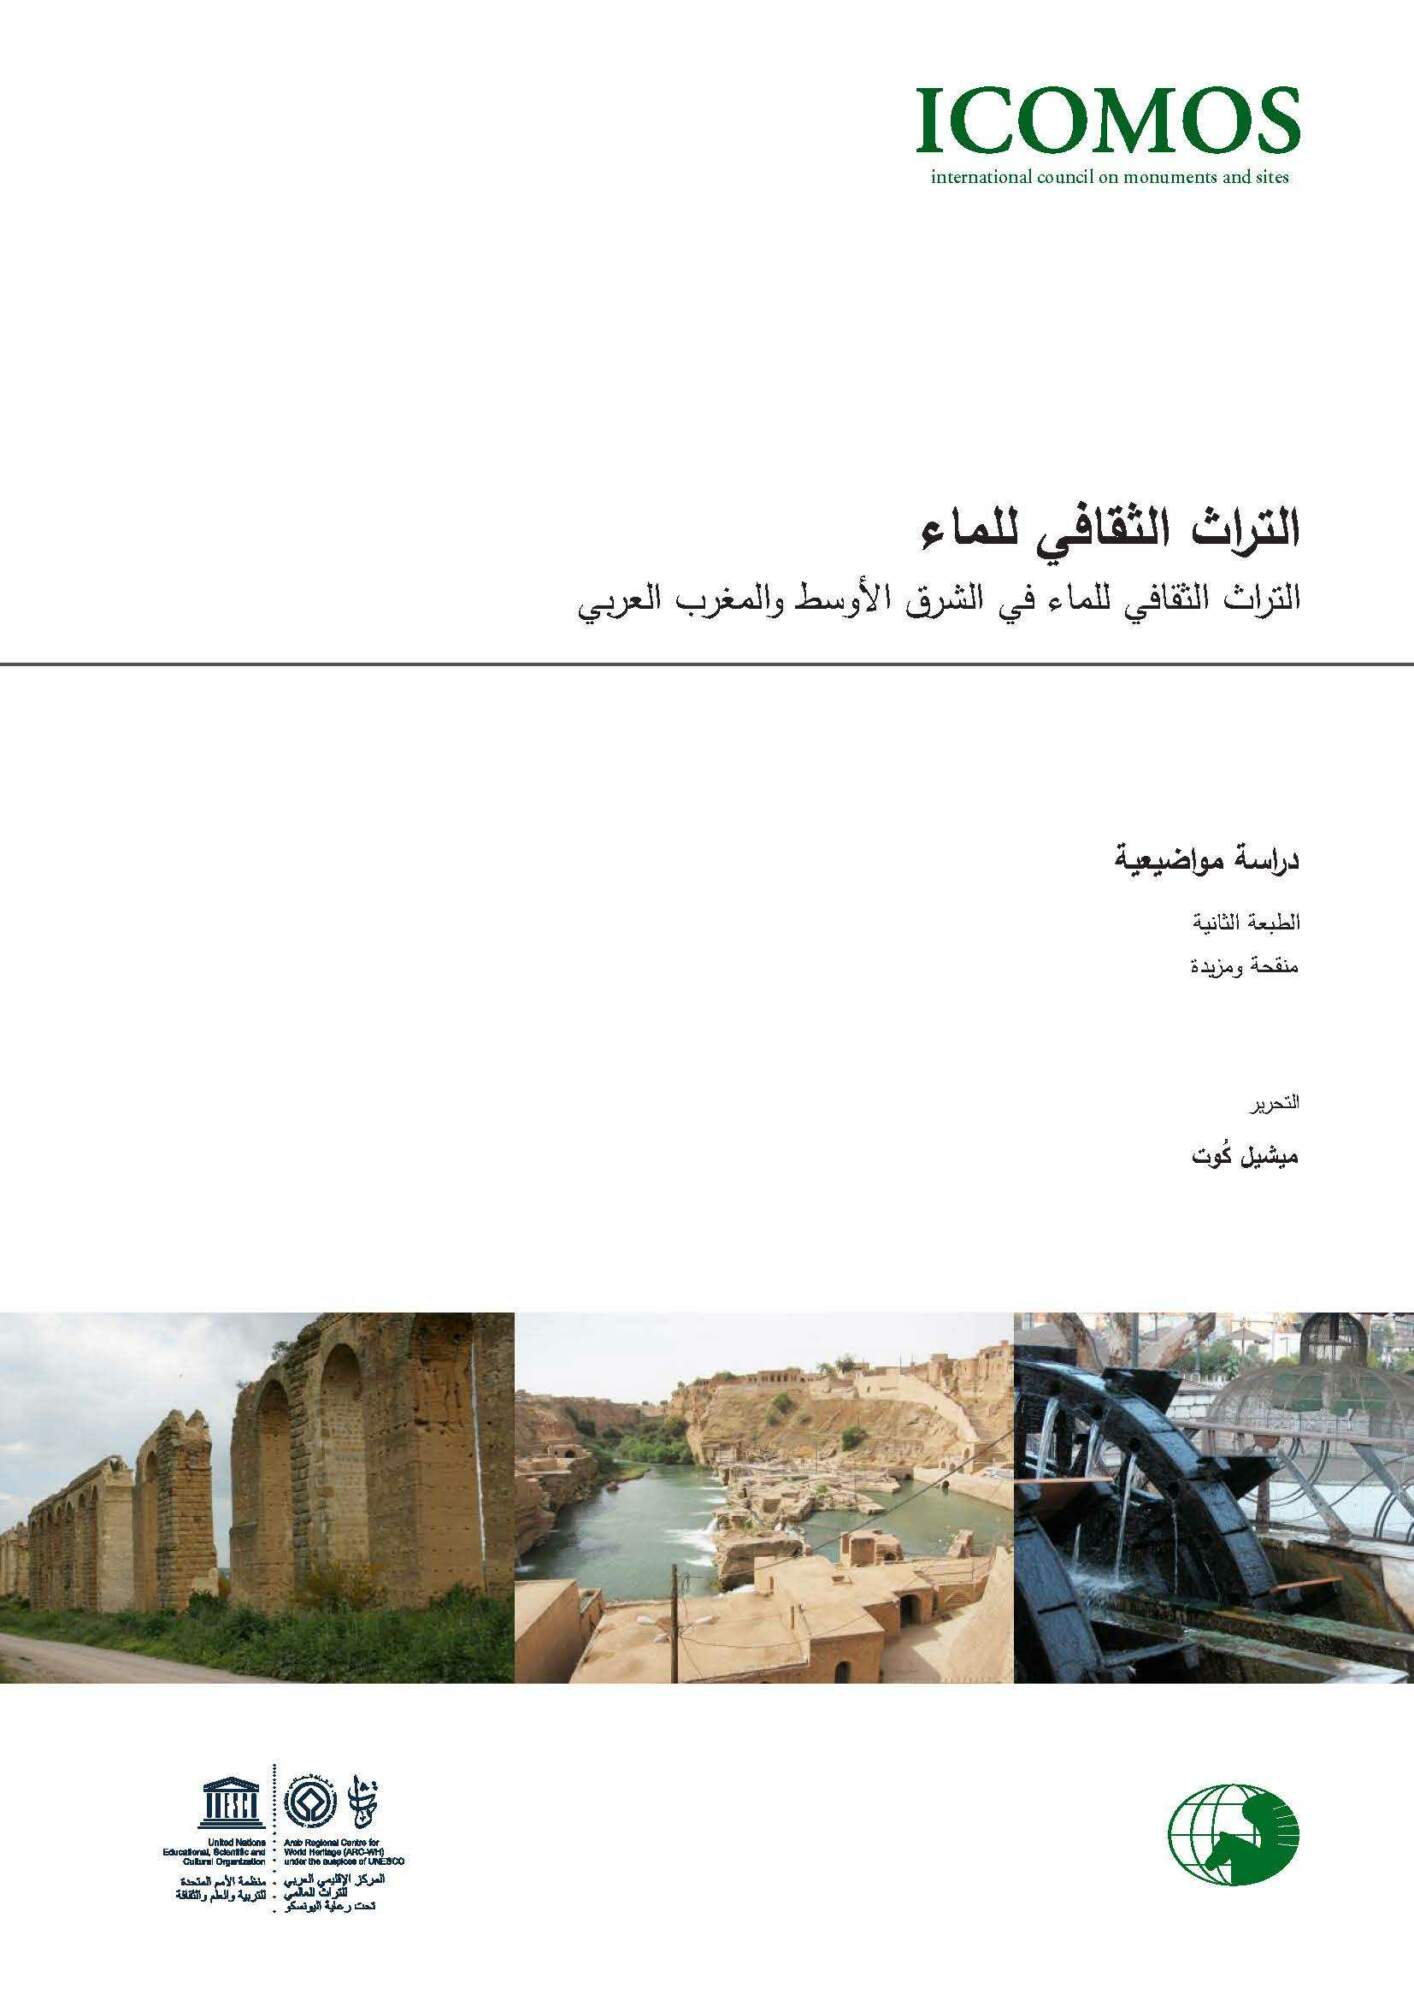 التراث الثقافي للماء في الشرق الأوسط والمغرب العربي